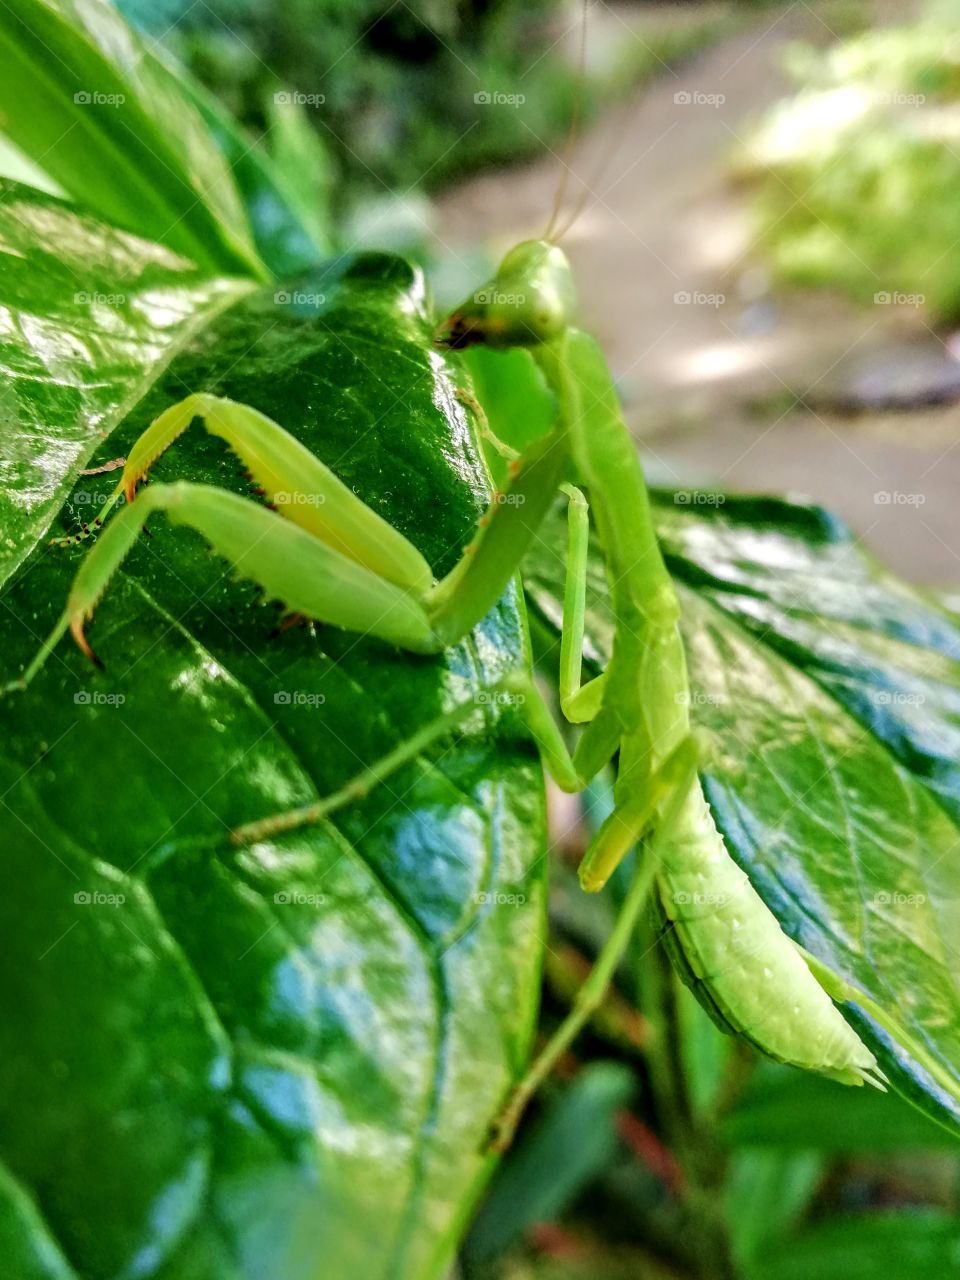 praying mantis in action